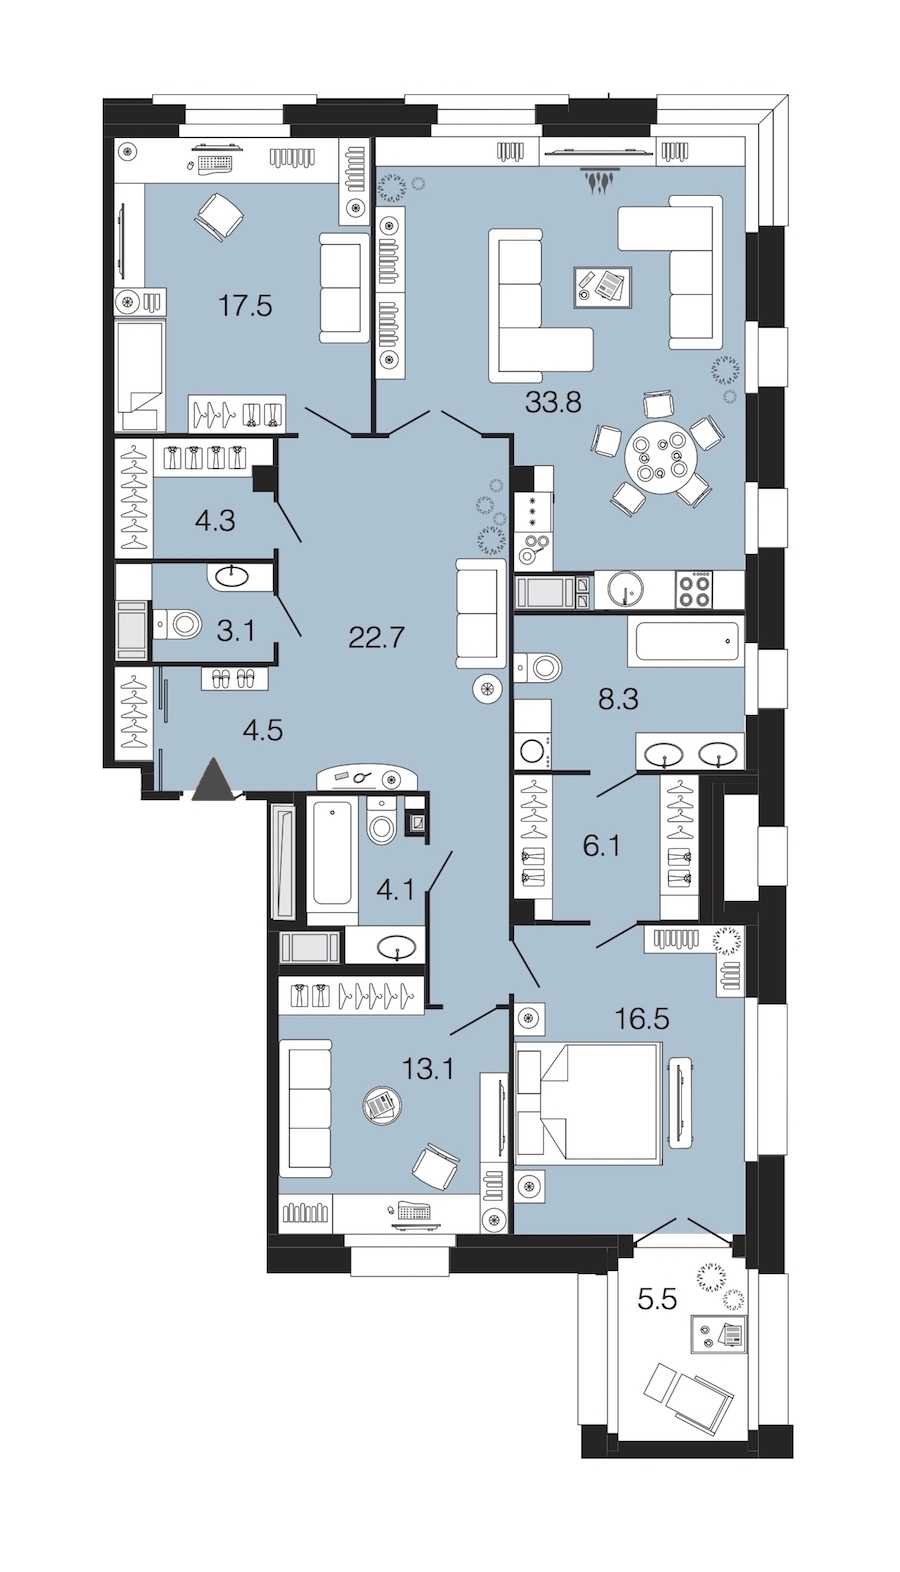 Трехкомнатная квартира в : площадь 134 м2 , этаж: 4 – купить в Санкт-Петербурге